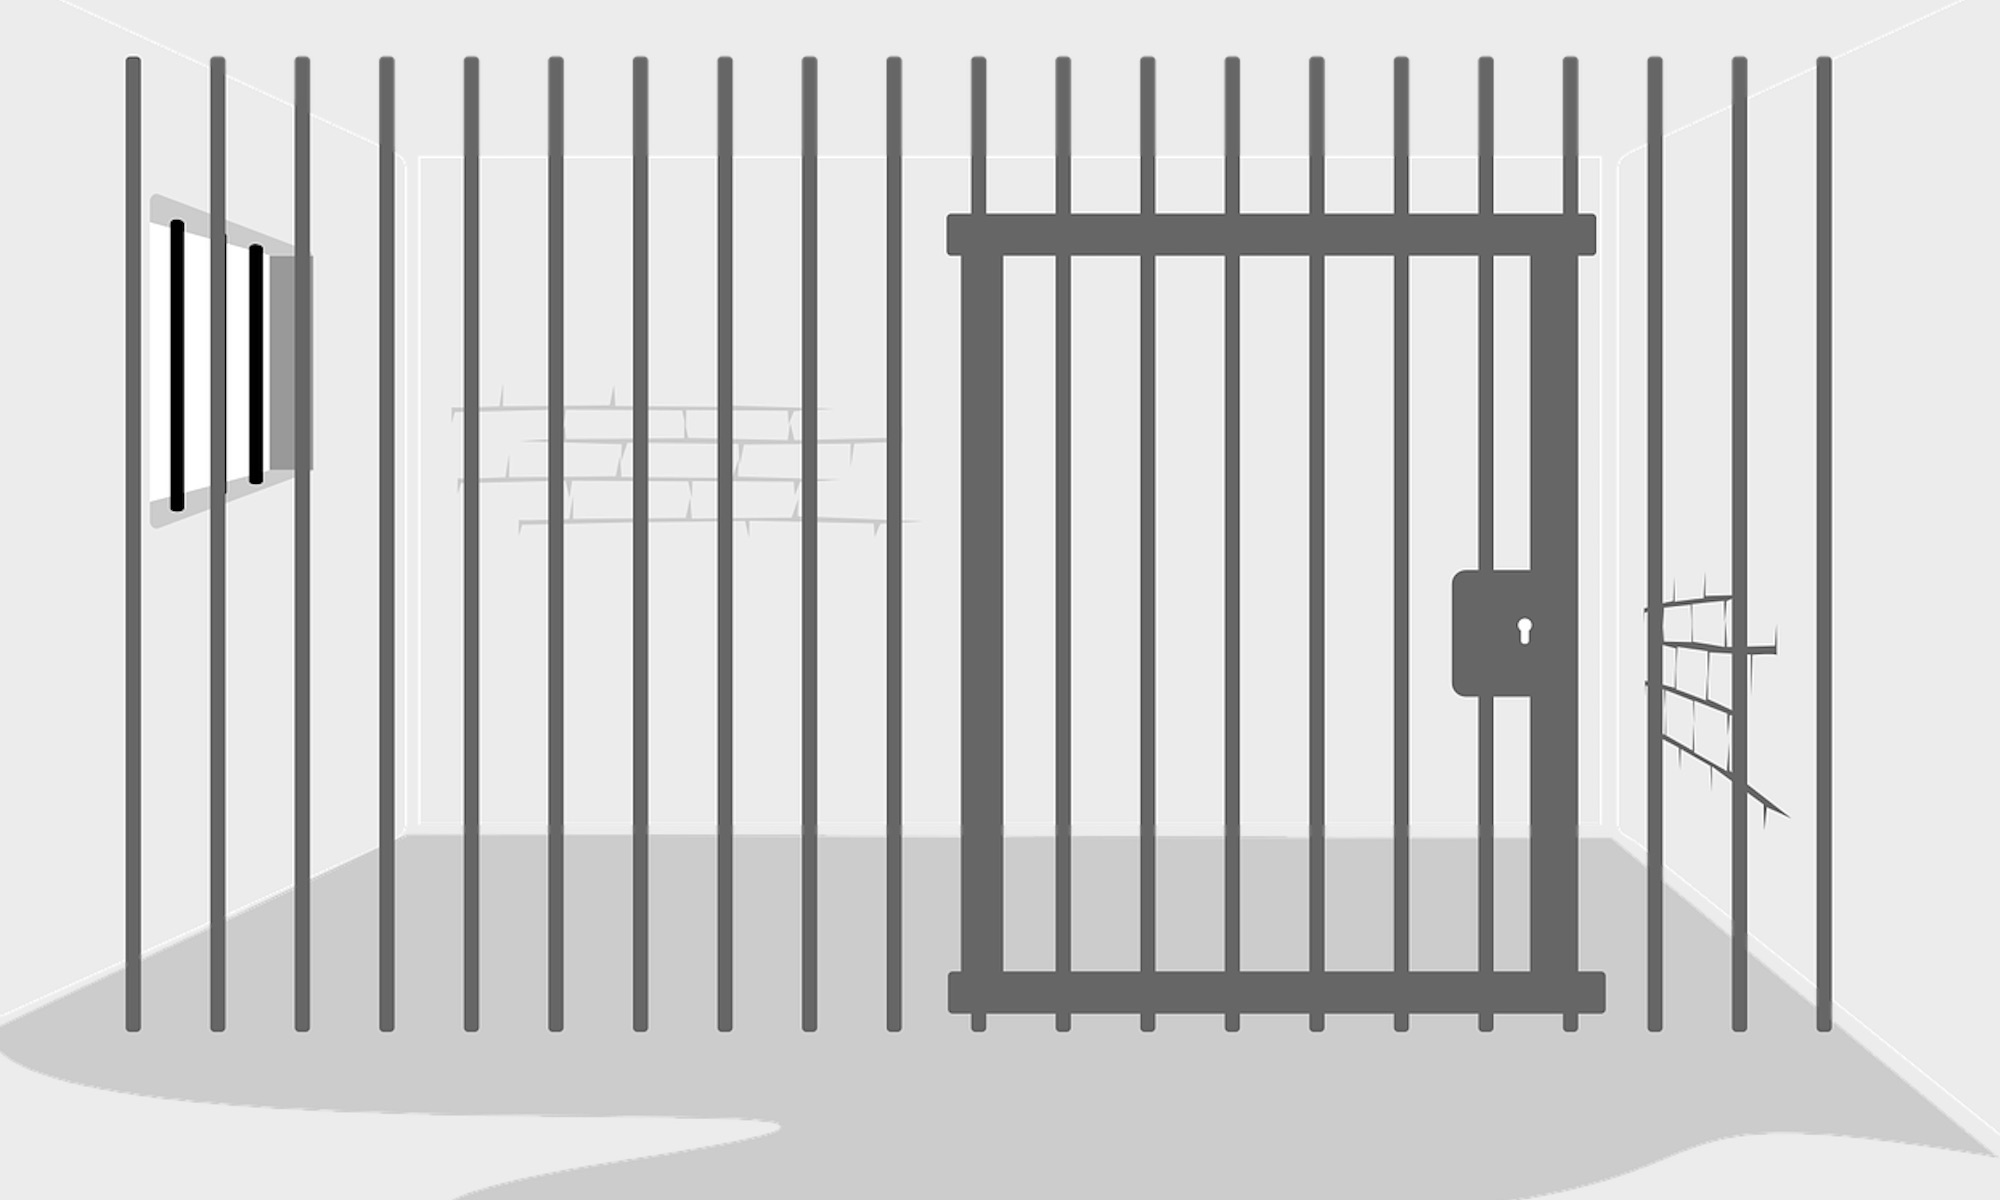 Başkasının Yerine Cezaevine Girme Suçu Hakkında Genel Bilgiler